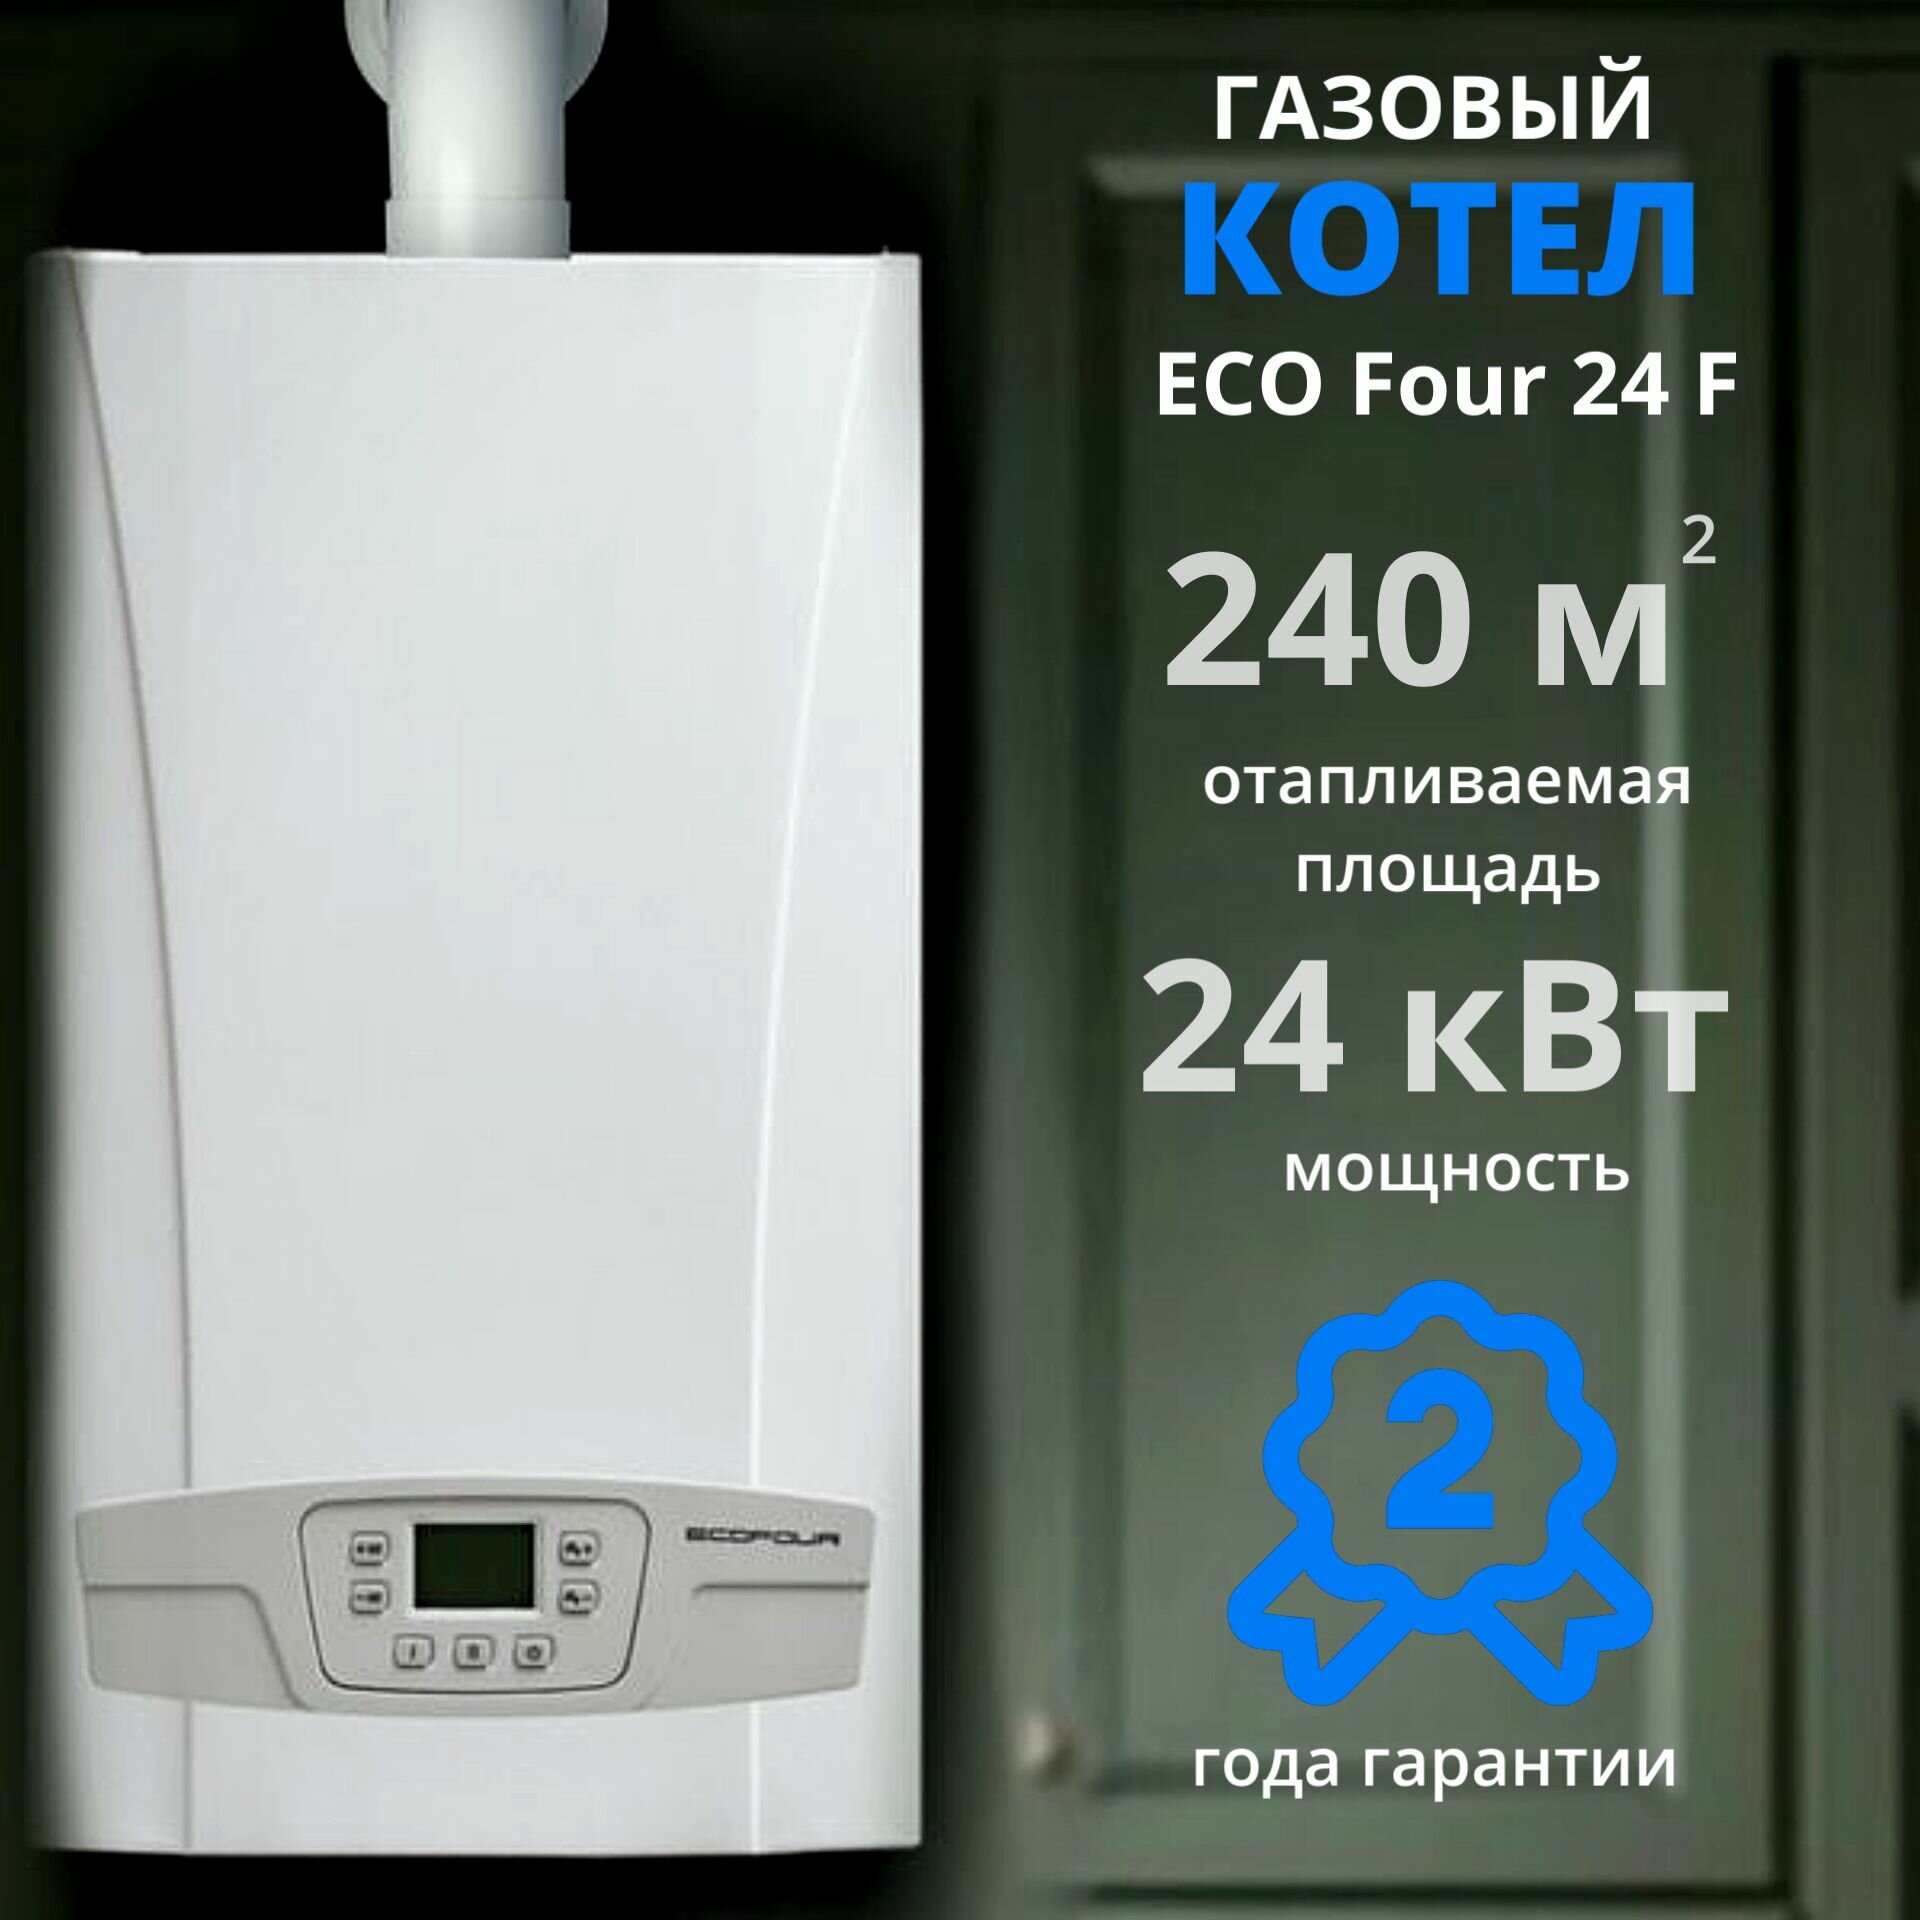 Настенный газовый котел BAXI ECO FOUR 24F+дымоход В подарок (24 кВт), газовый, для отопления, турбированный, настенный, двухконтурный. Товар уцененный